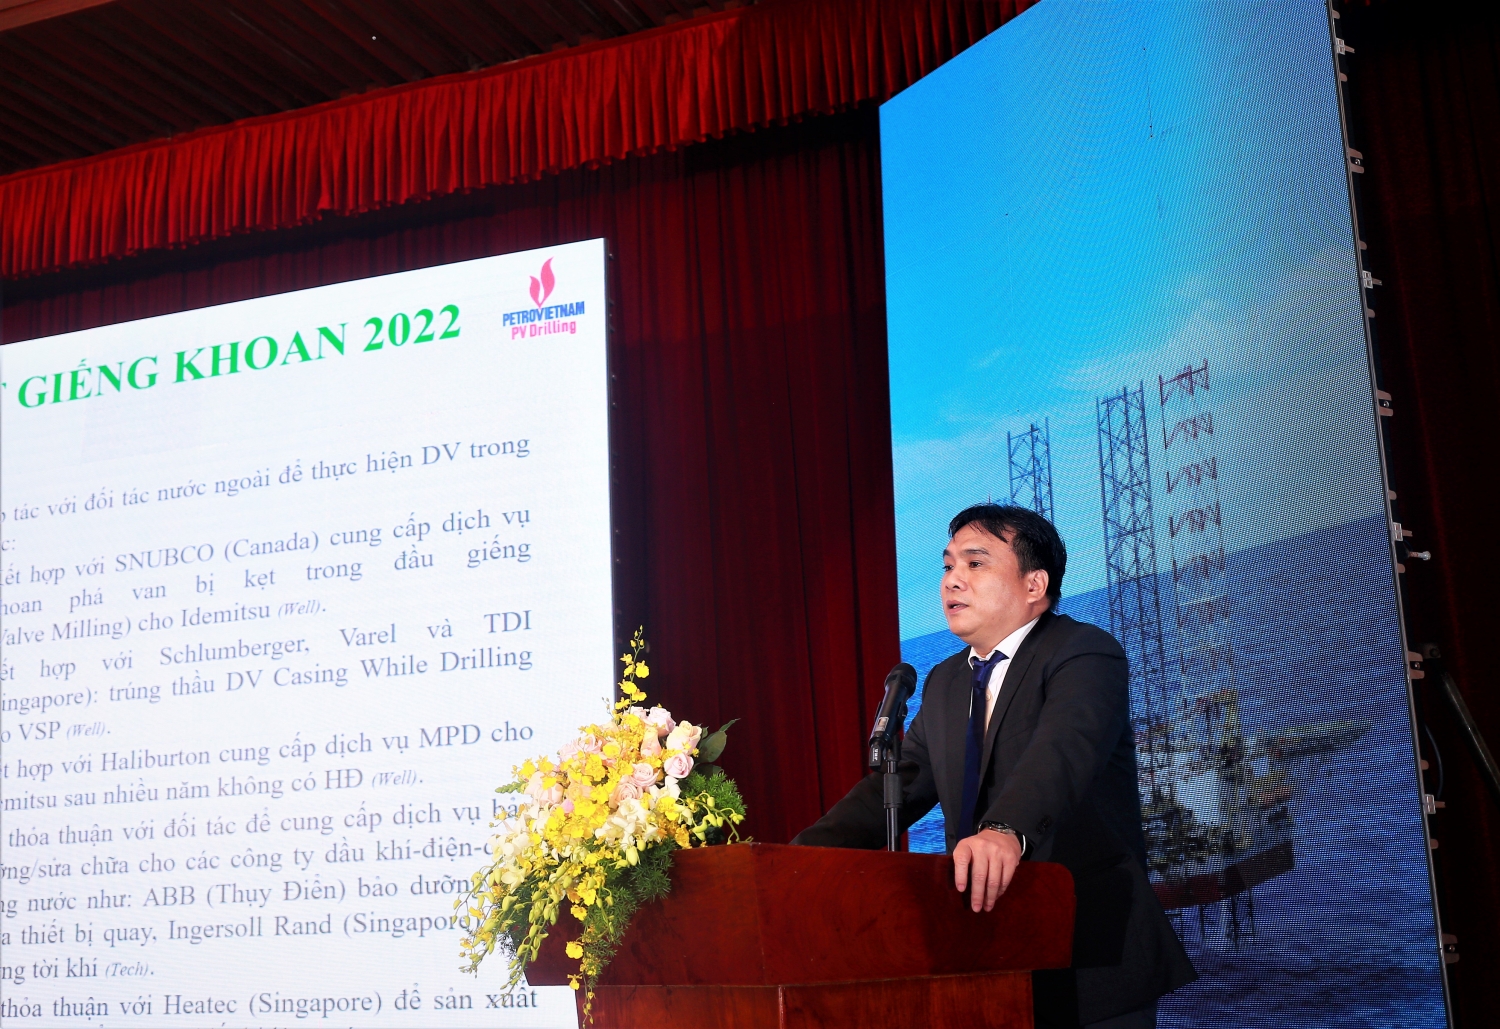 Petrovietnam ghi nhận sự nỗ lực lớn của PV Drilling trong năm 2022